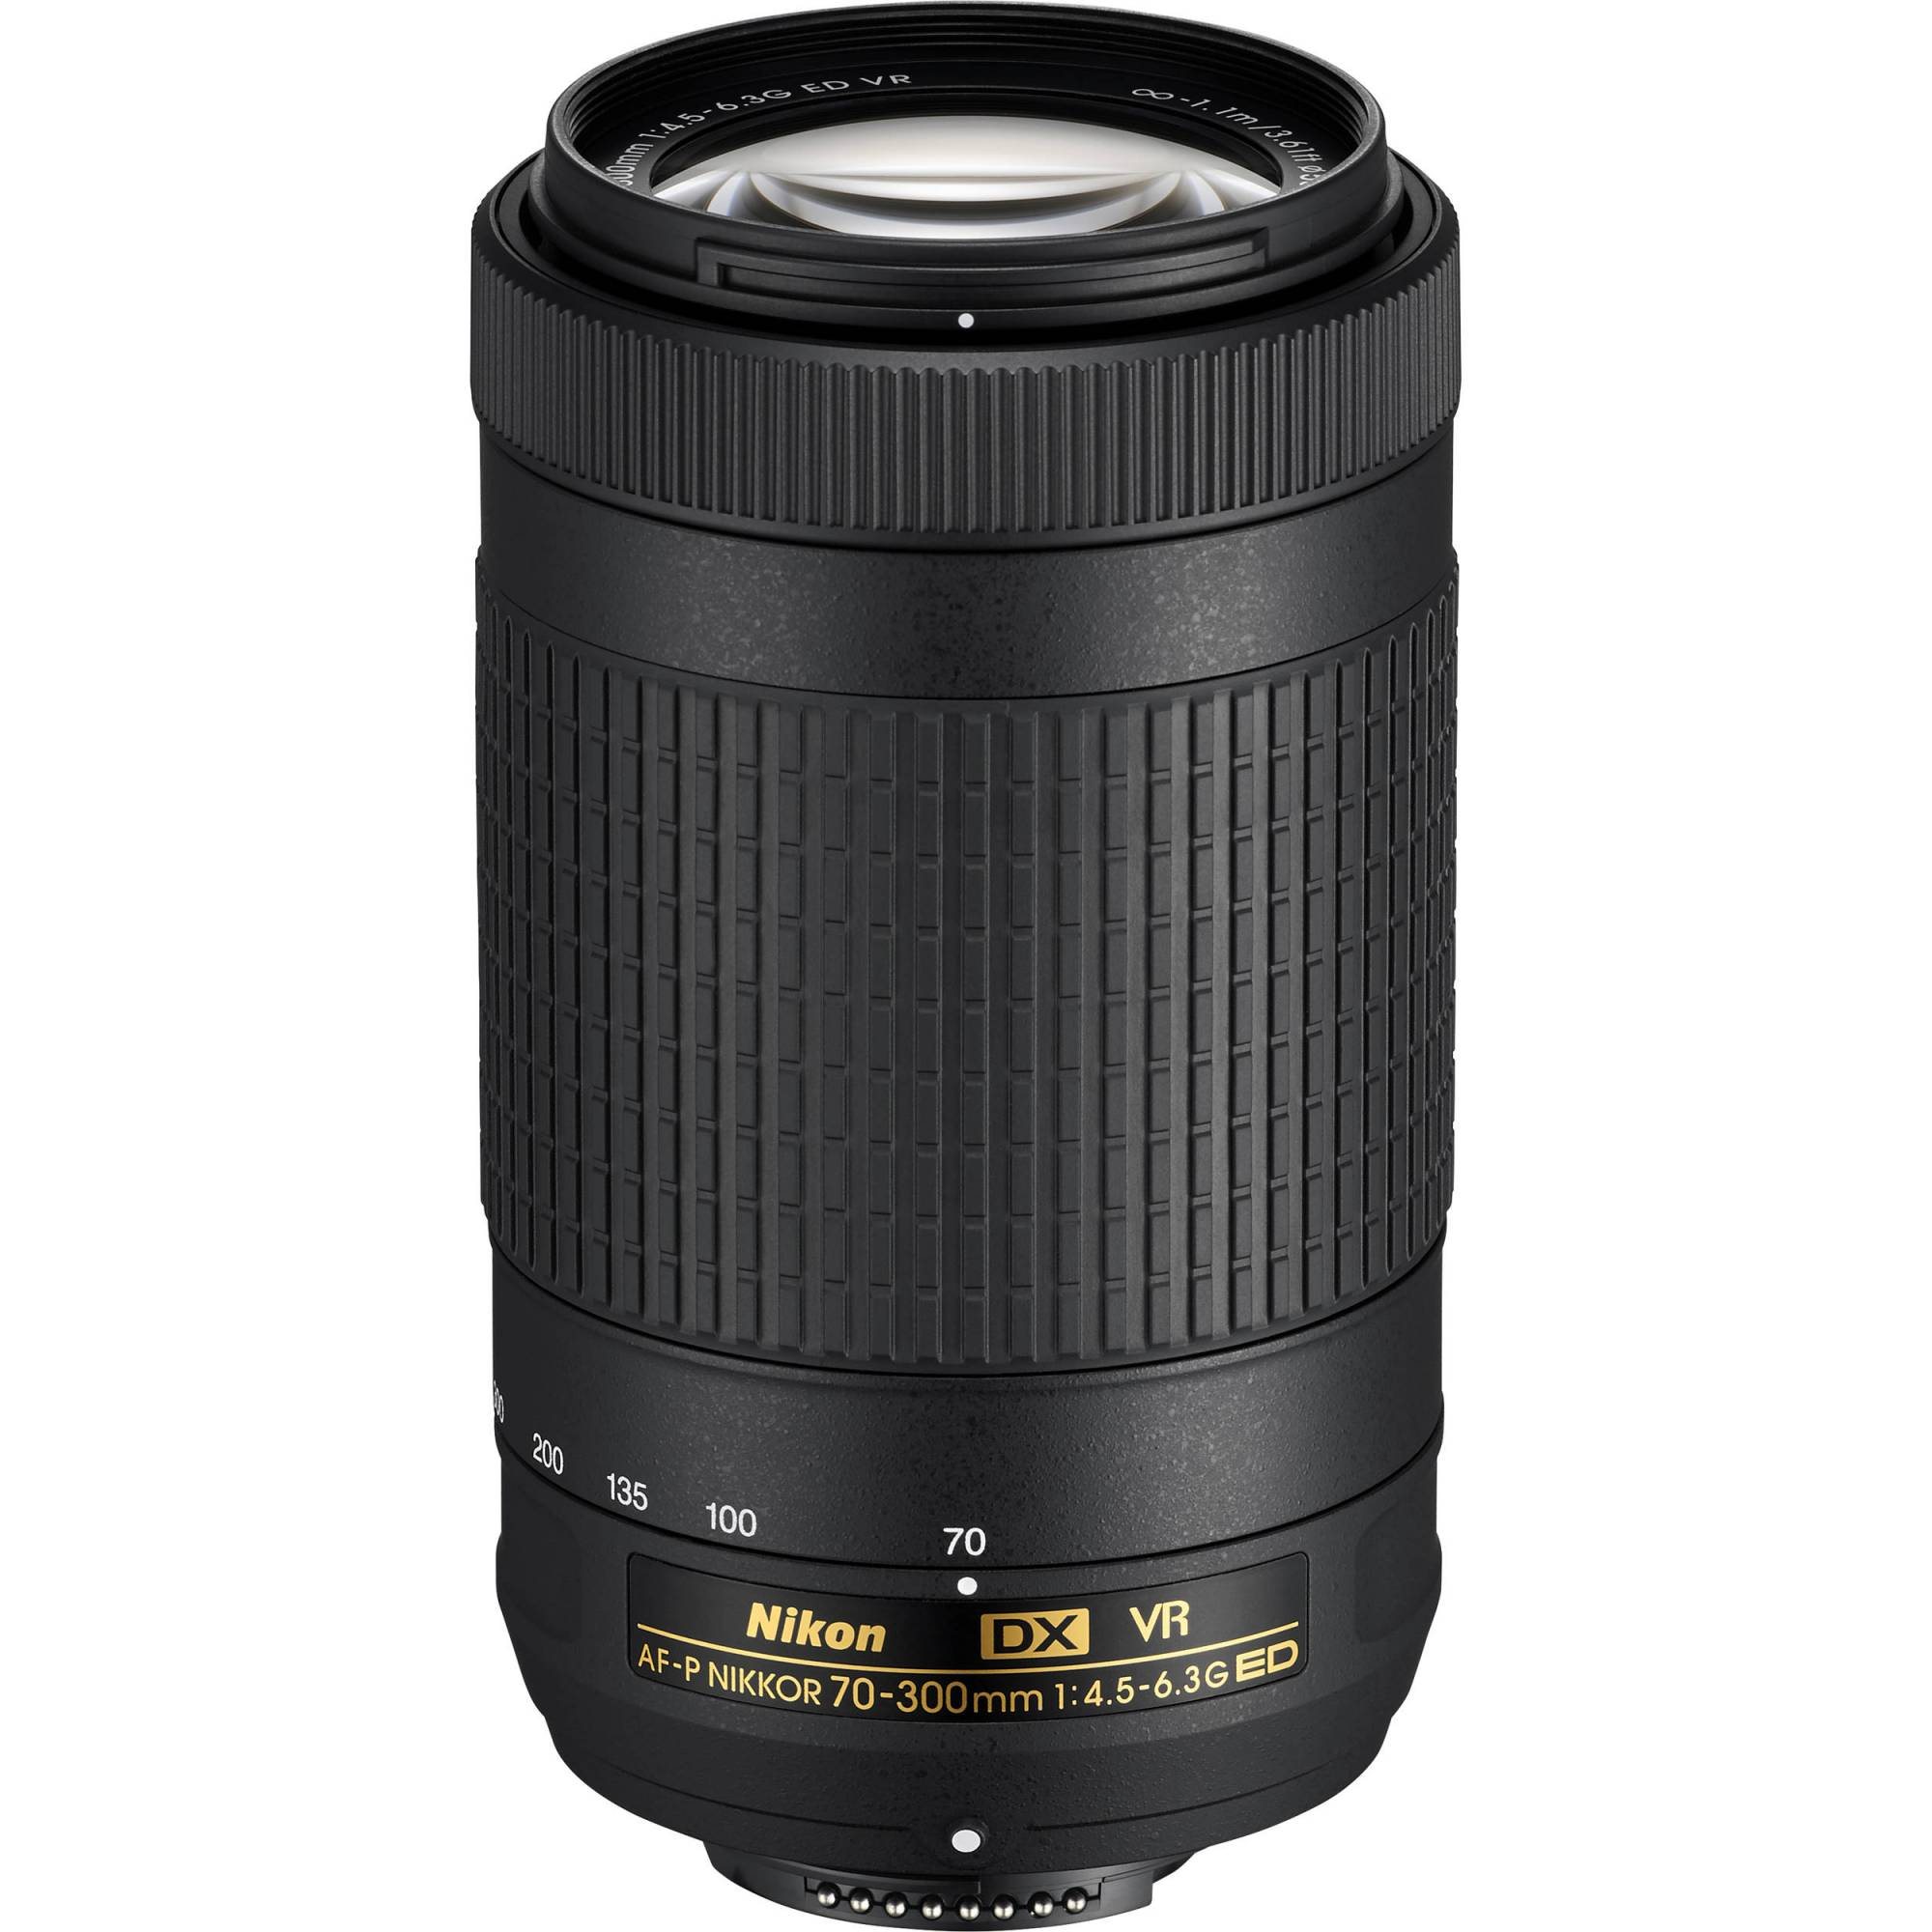 Nikon 70-300mm AF-P DX NIKKOR 70-300mm f/4.5-6.3G ED VR - Lenses ...